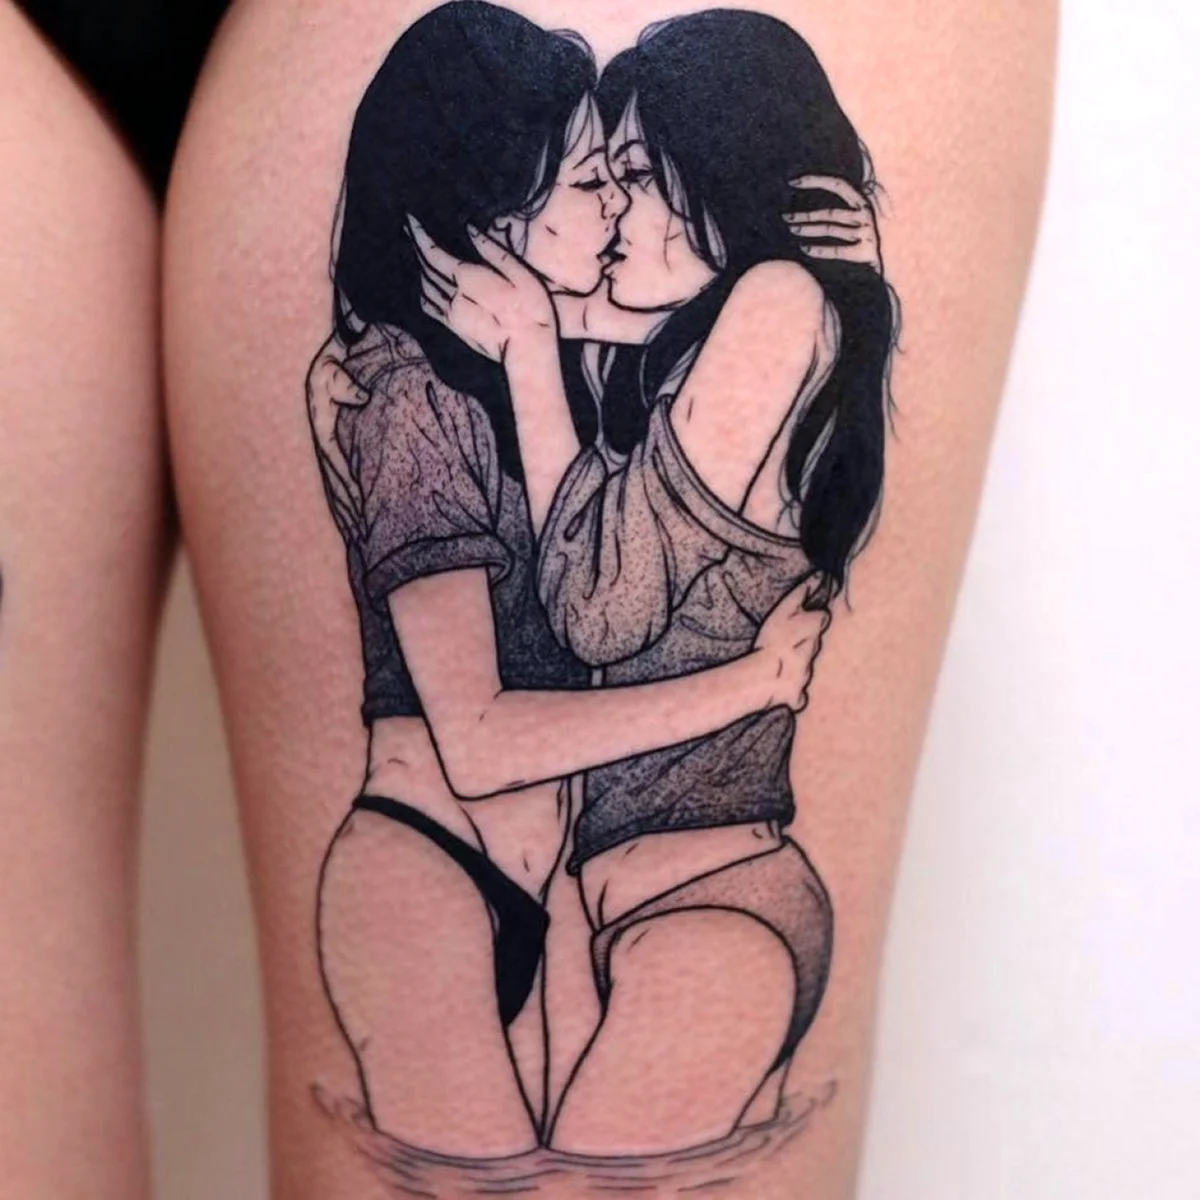 Две девушки с татуировками